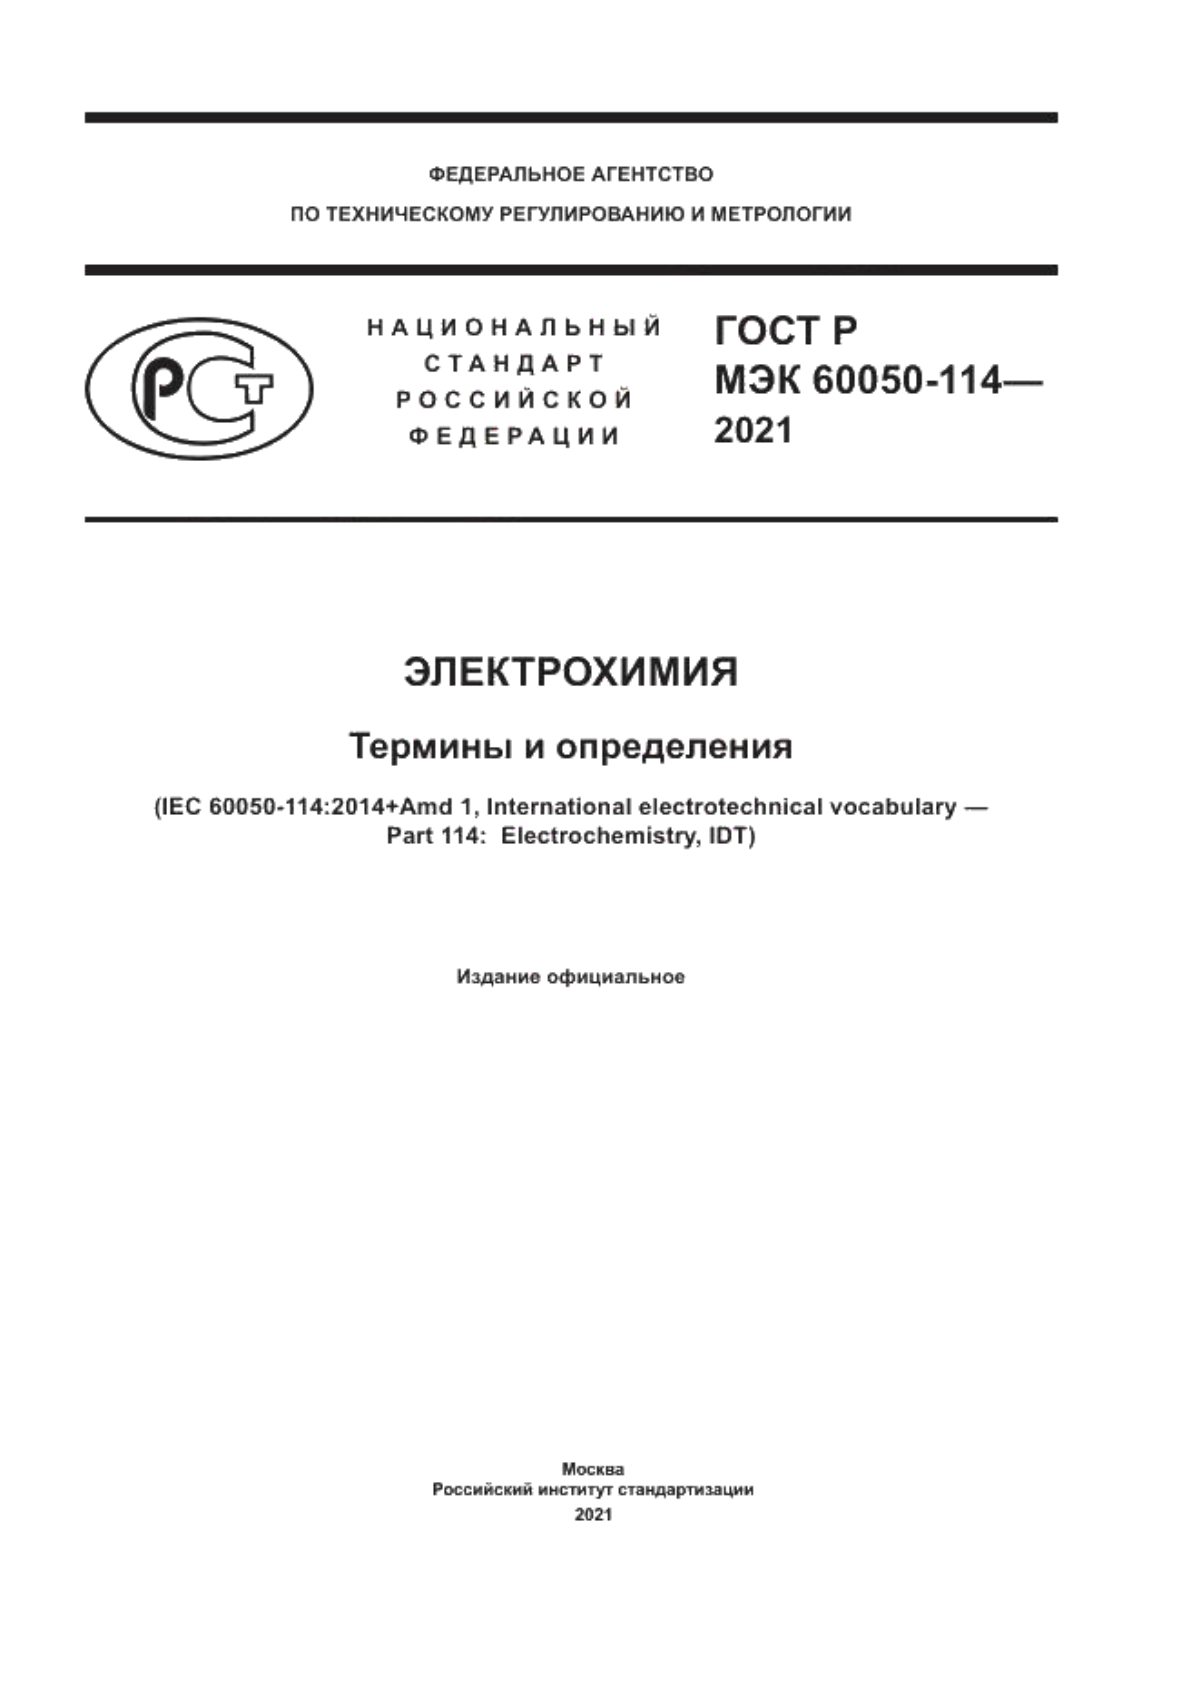 ГОСТ Р МЭК 60050-114-2021 Электрохимия. Термины и определения